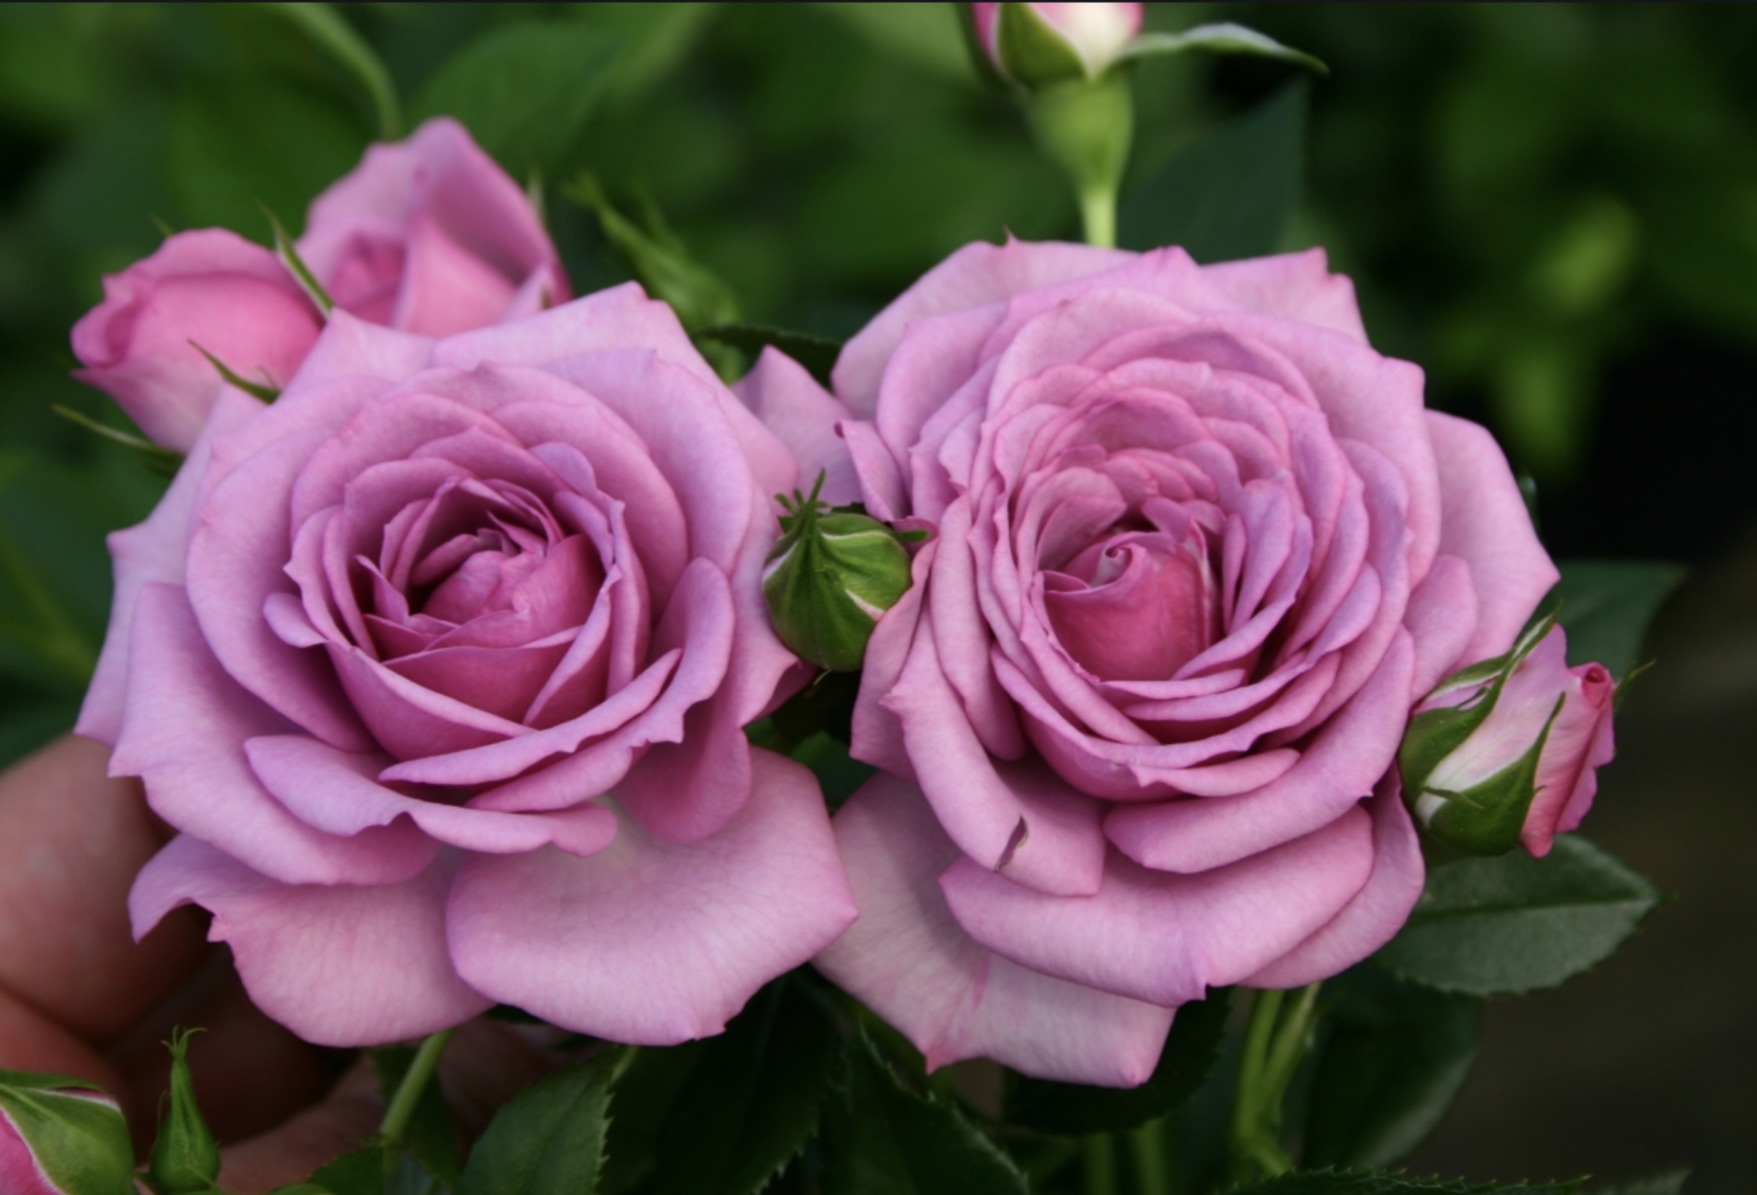 Узнать сорт розы по фото онлайн бесплатно без регистрации